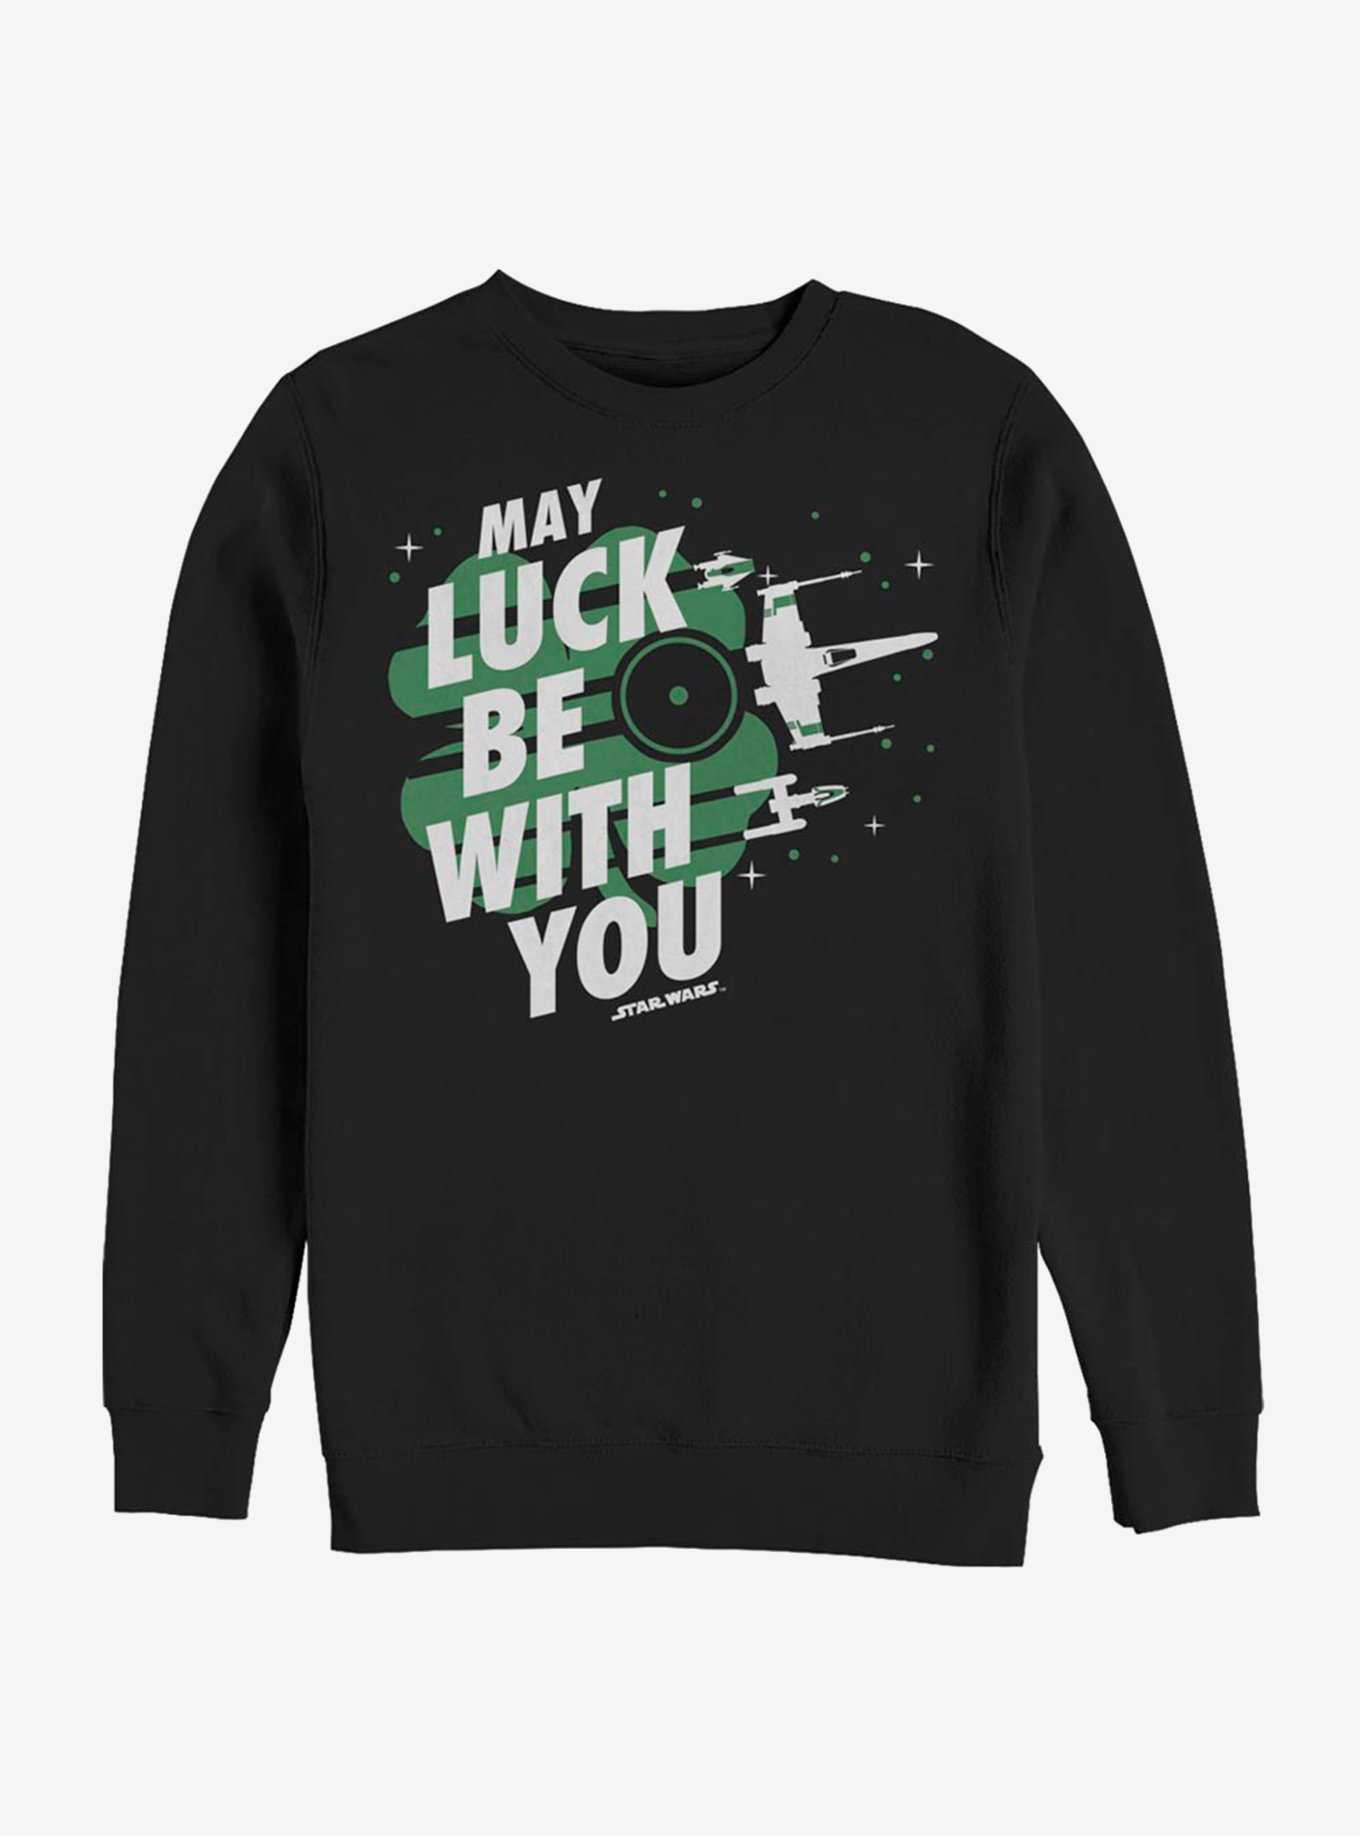 Star Wars Luck Fighters Sweatshirt, , hi-res